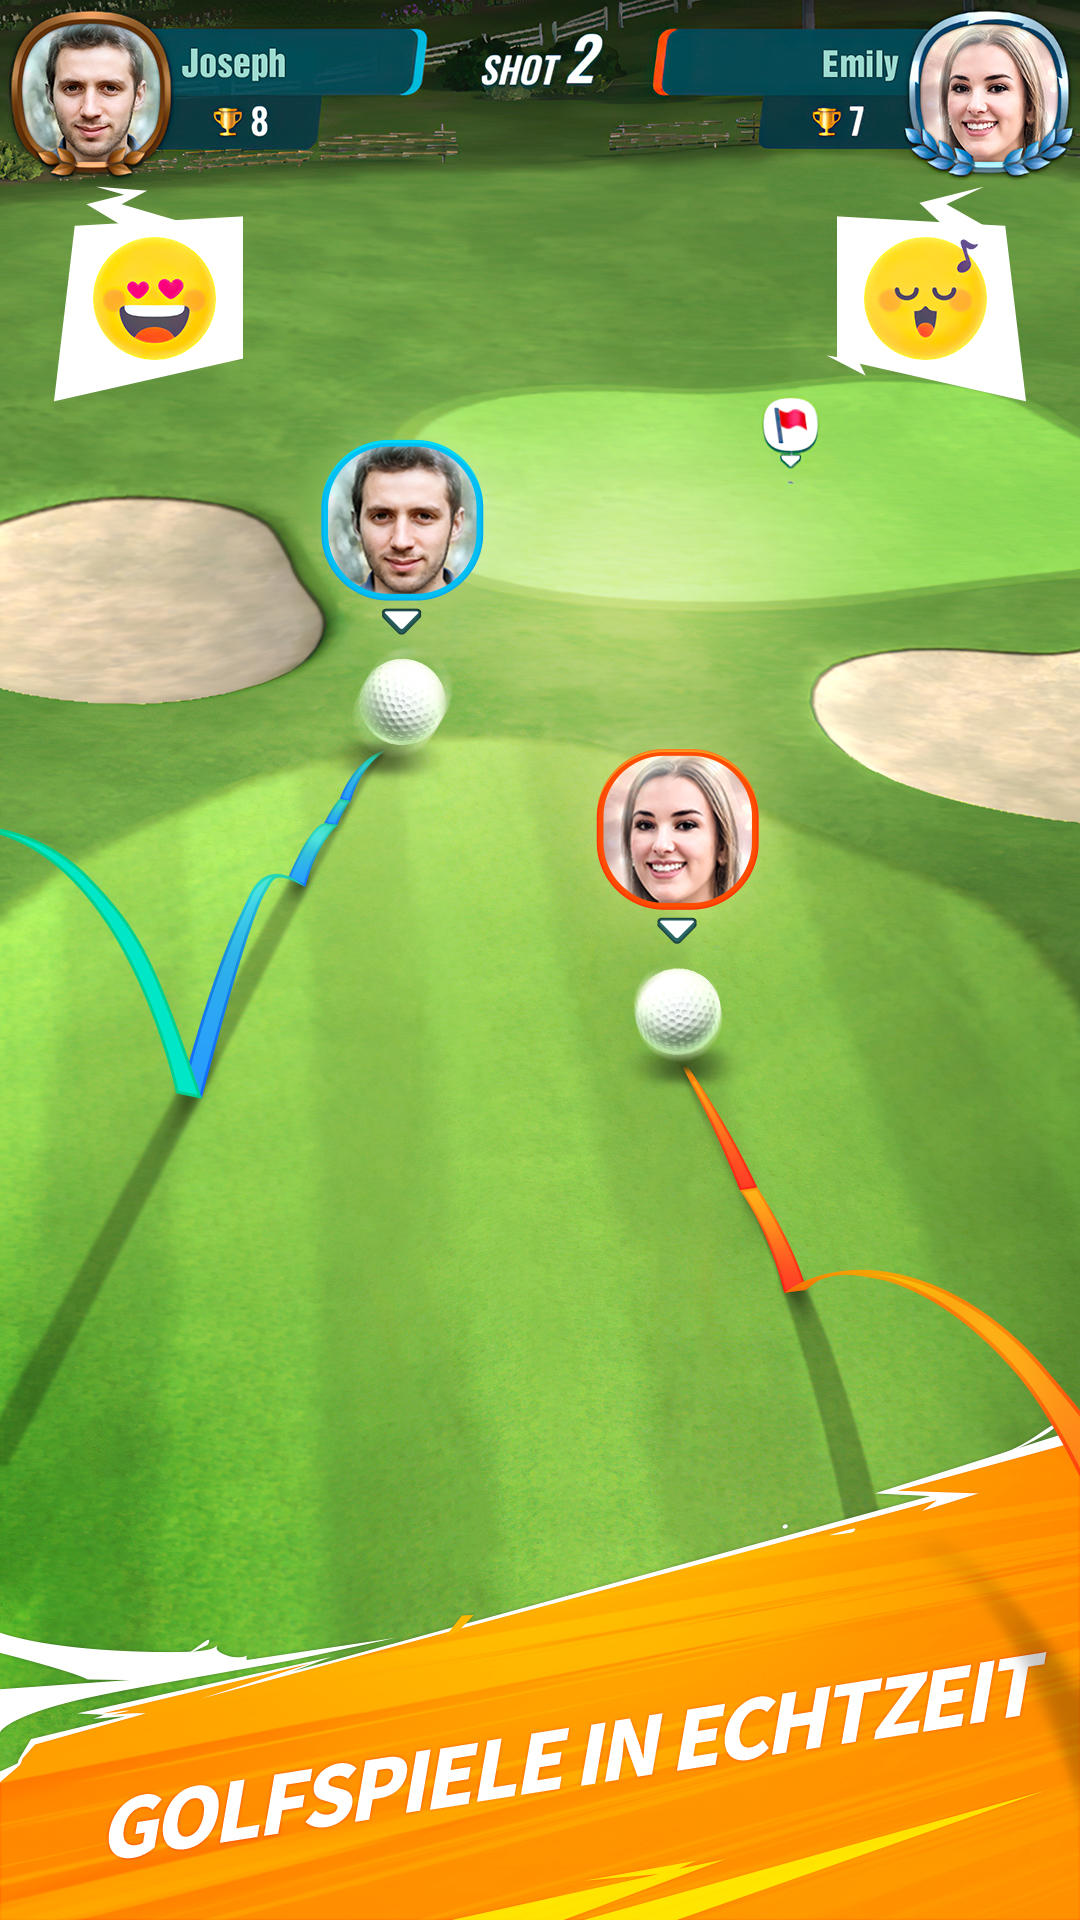 Screenshot 1 of Shot Online: Golf Battle 1.3.1.a